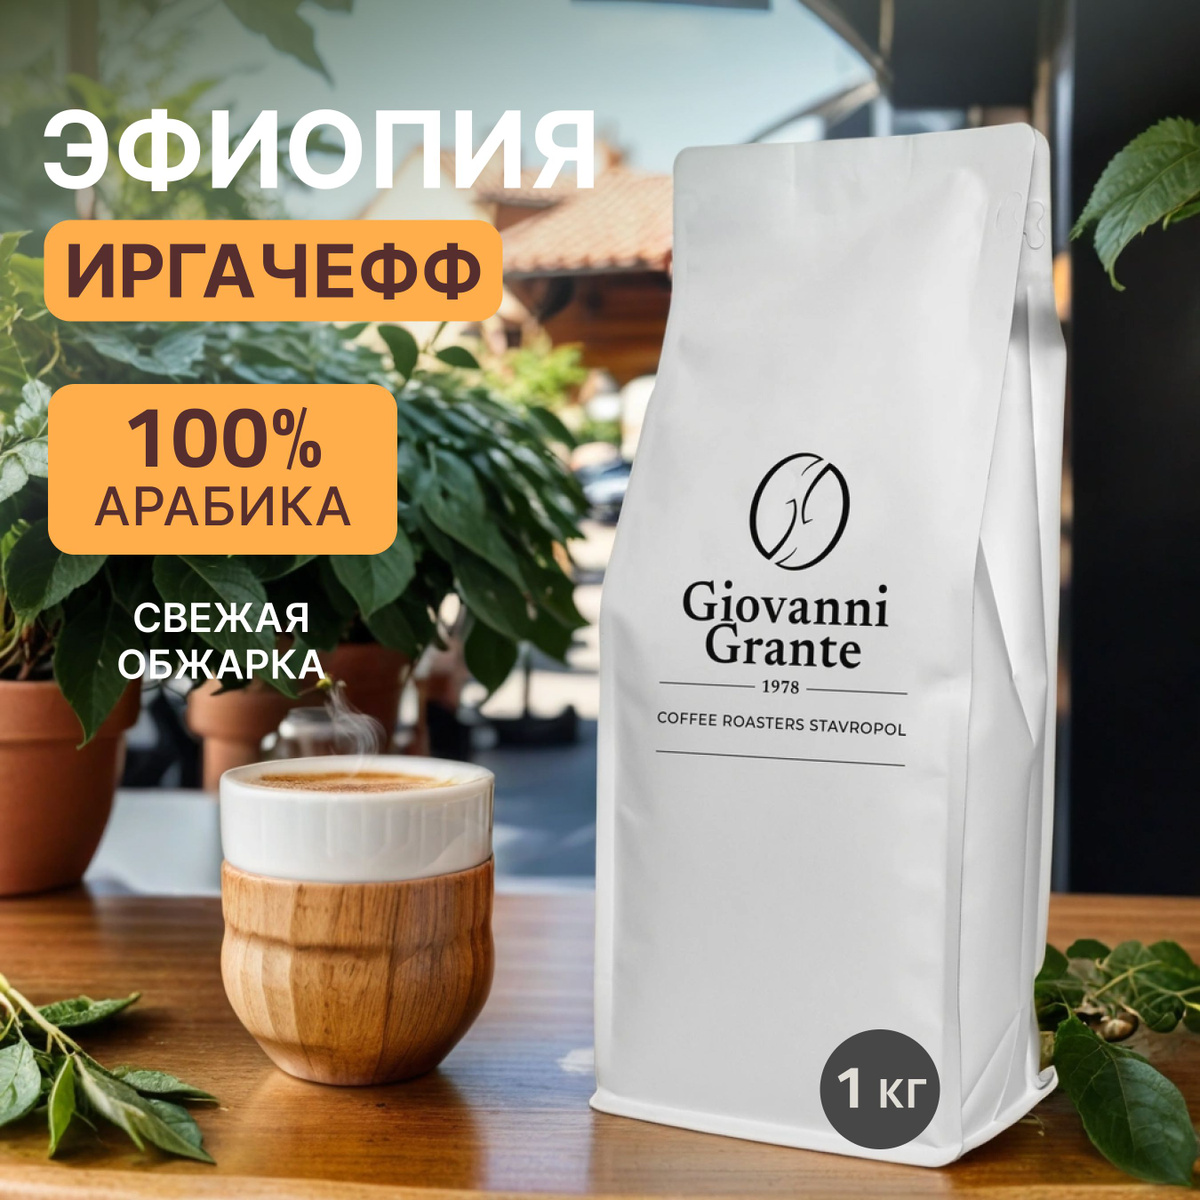 100% арабика Эфиопия Иргачефф Экваториал. Знакомый вкус премиального кофе. 1 кг